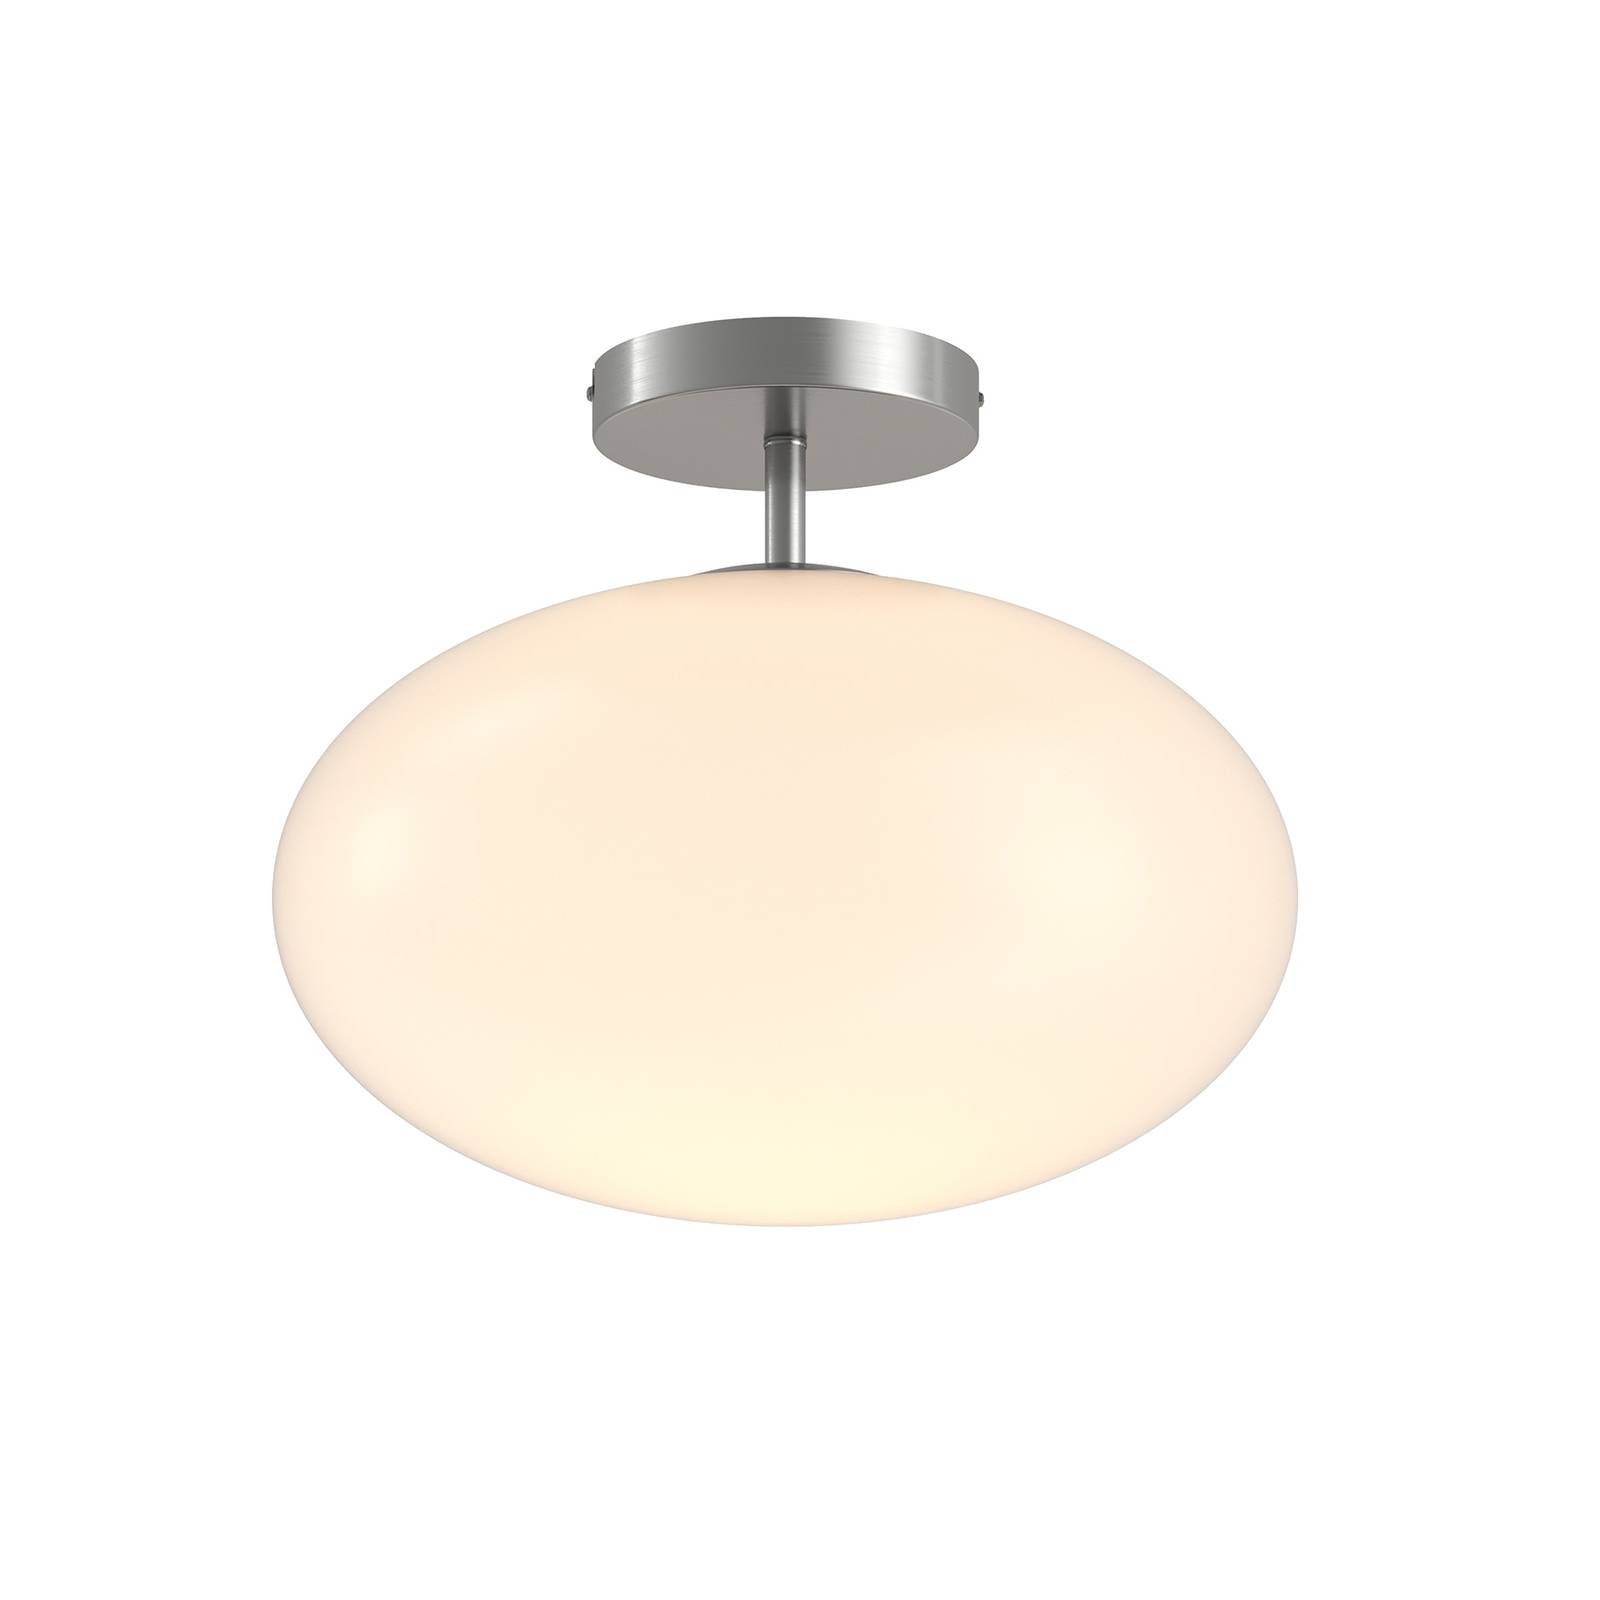 Deckenlampe Pakka nickel satin Lindby rund opal Glasschirm Küche Flur Wohnzimmer